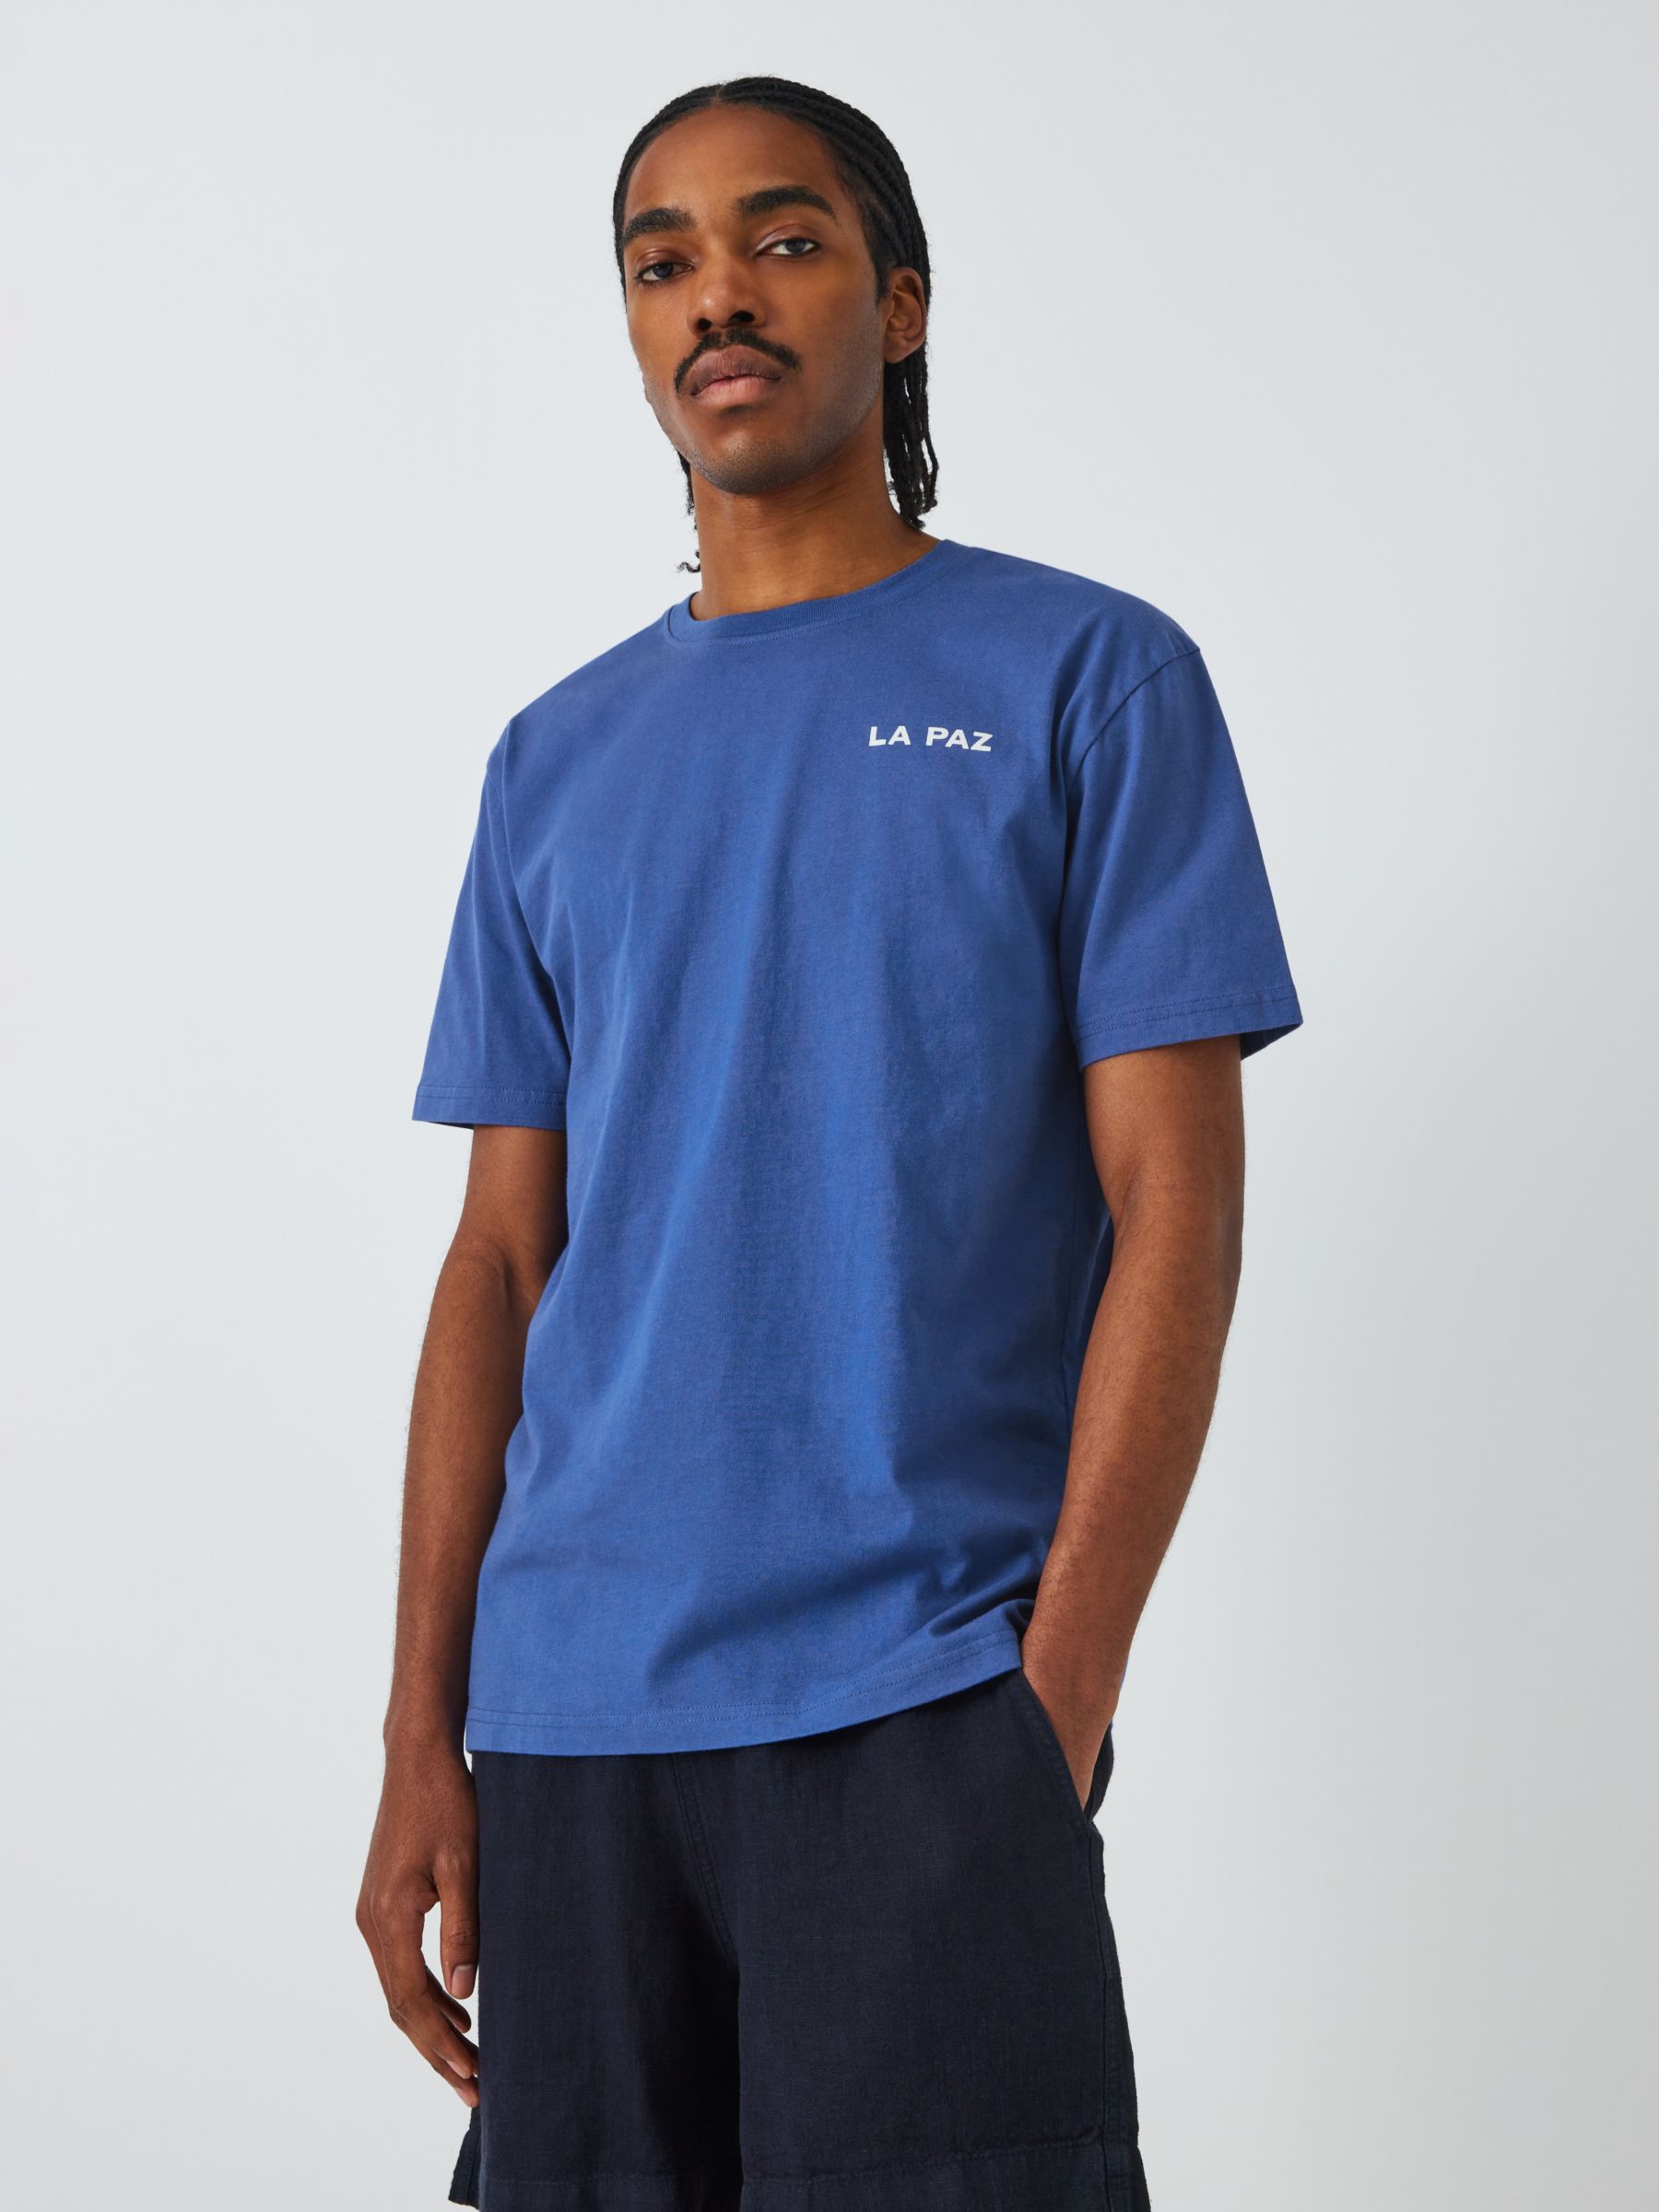 La Paz Print T-Shirt, Palm Blue, S